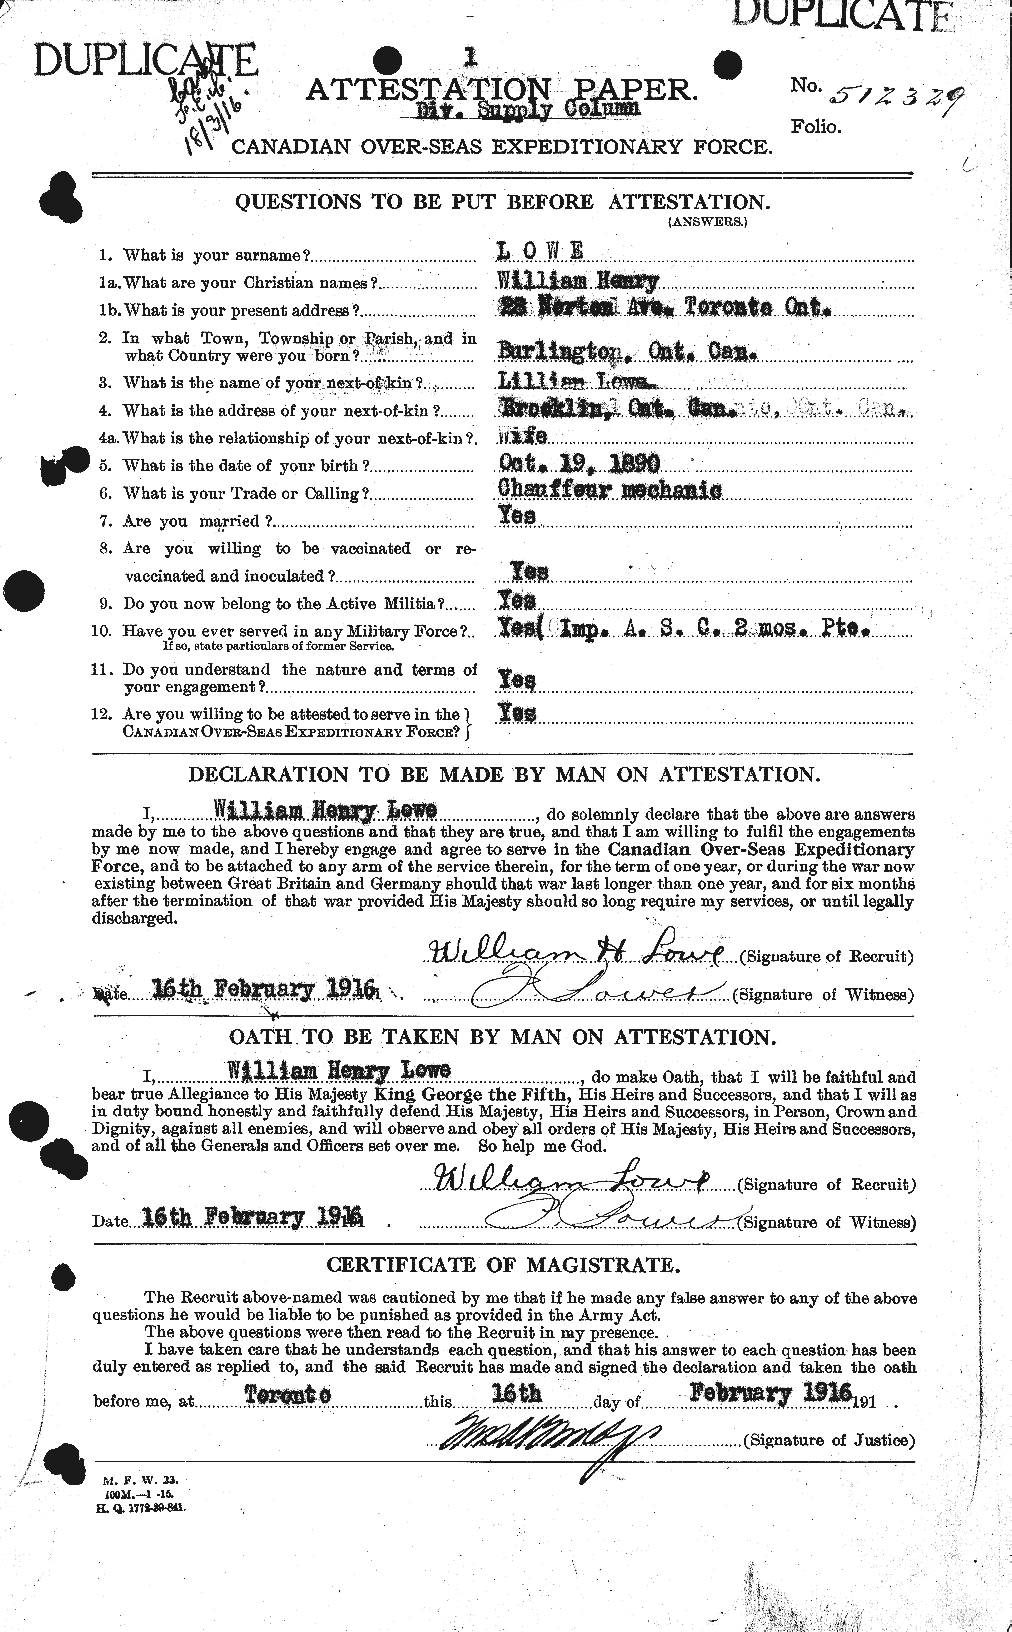 Dossiers du Personnel de la Première Guerre mondiale - CEC 471231a